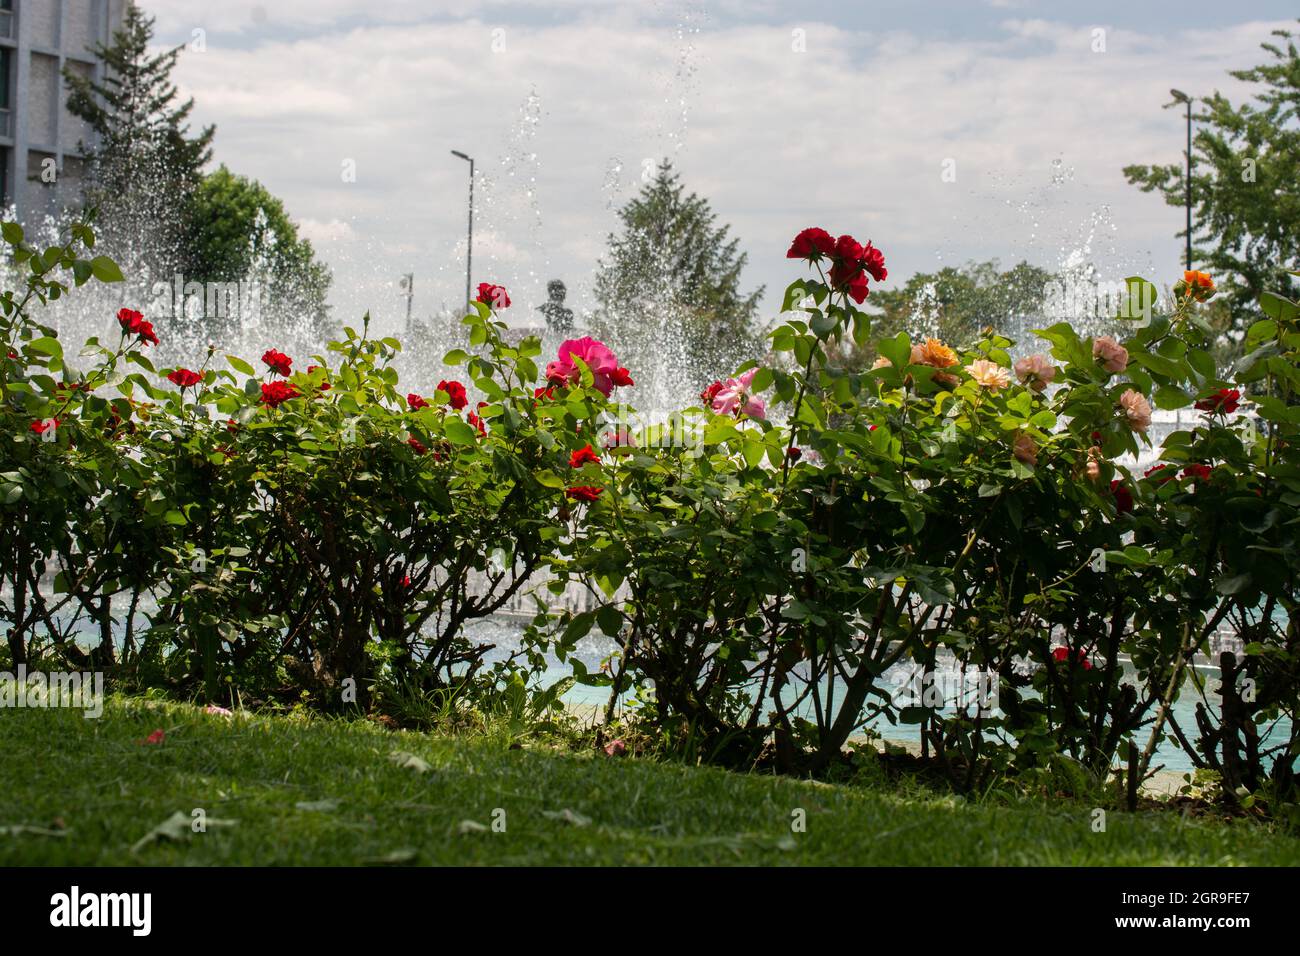 Vue panoramique d'un parc rempli de roses colorées qui sont arrosées entouré d'arbres Banque D'Images